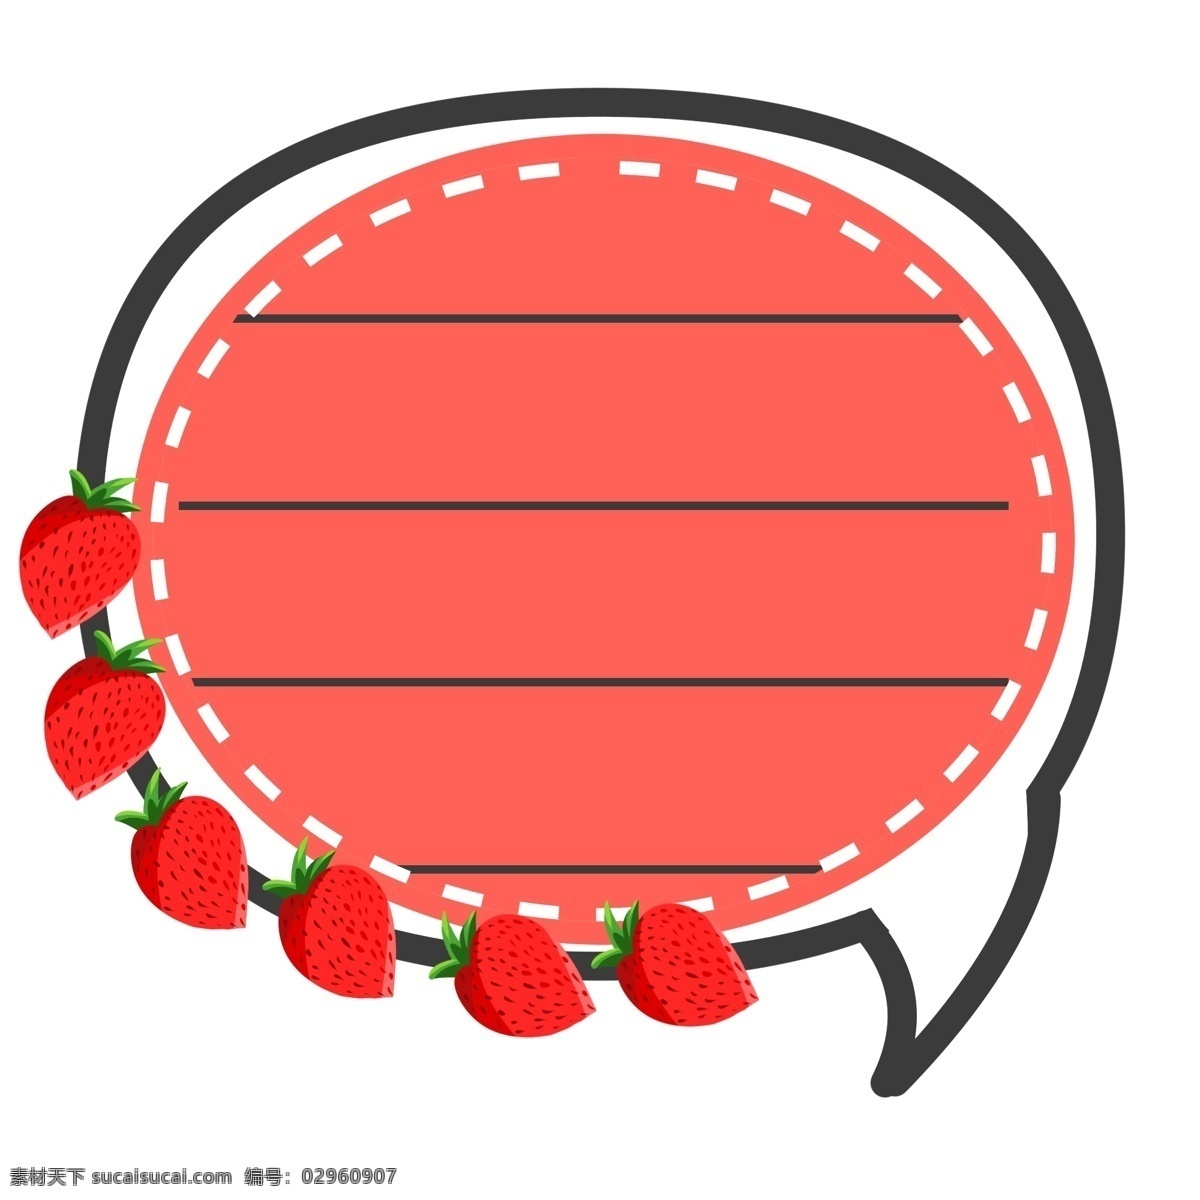 红色 草莓 便签 插画 红色便签 草莓便签 水果便签 便签装饰插画 圆形边框 可爱的边框 漂亮的边框